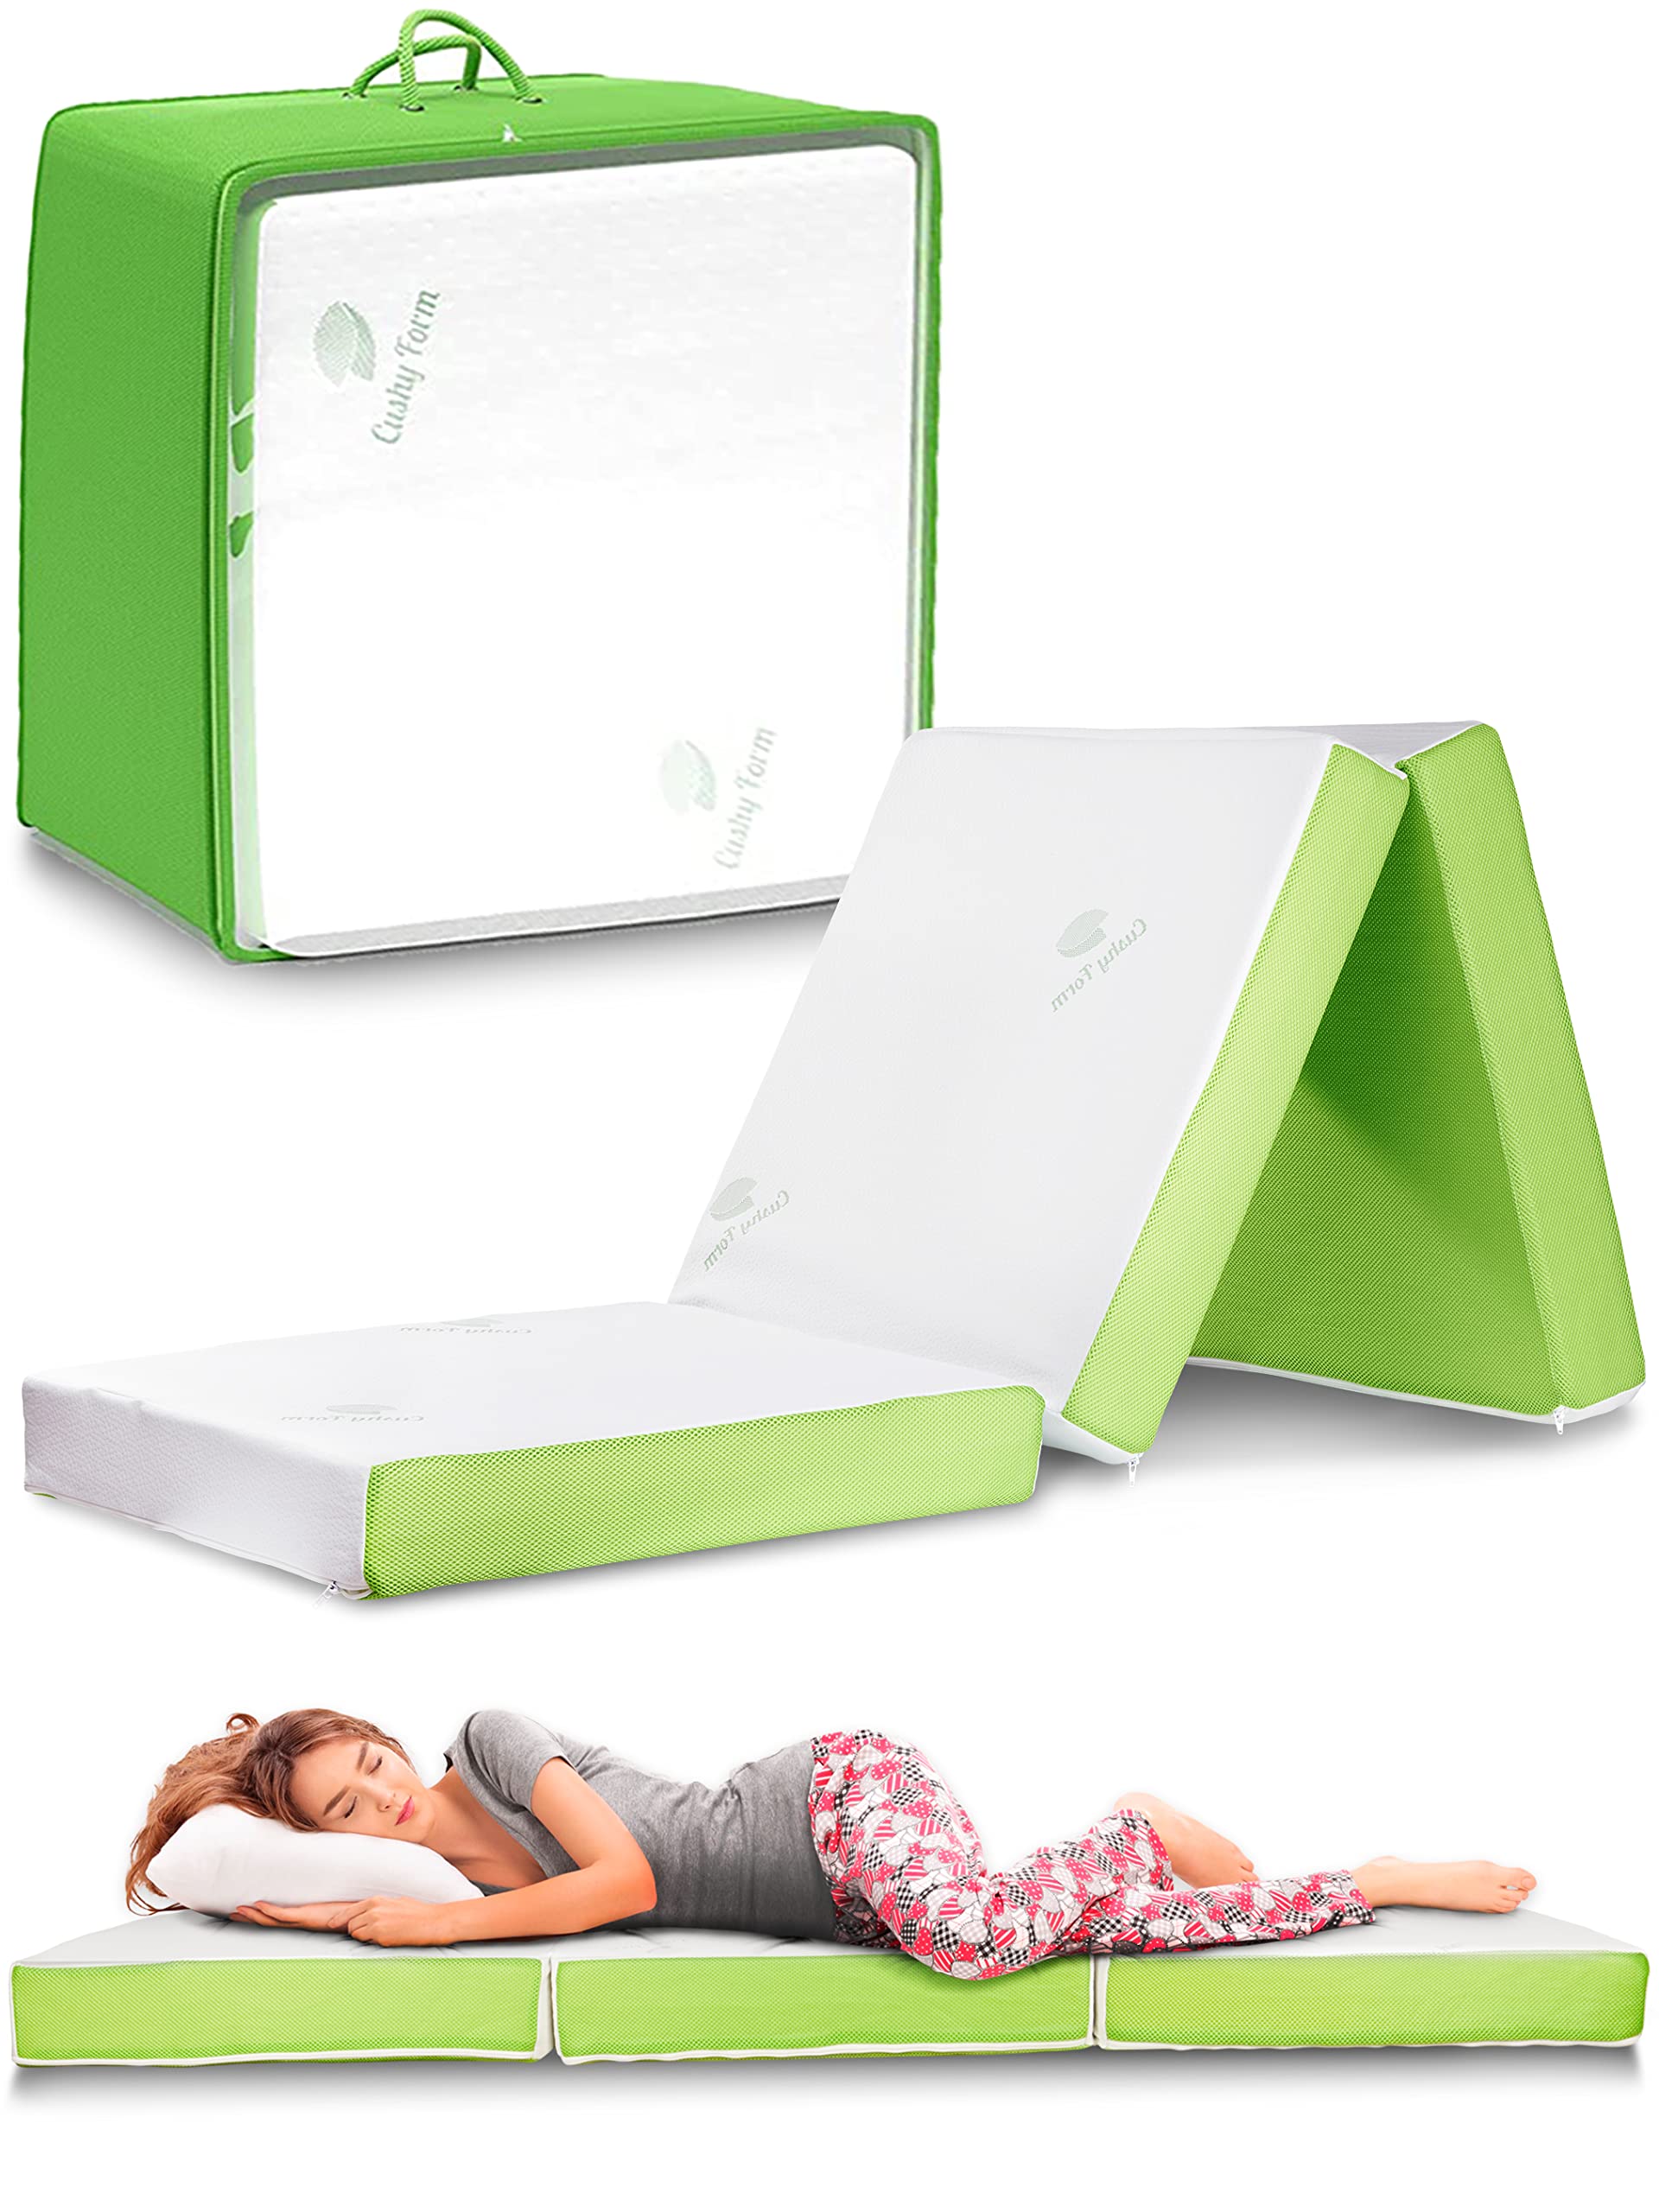 Cushy Form Thera Health 地板床垫 - 适合旅行、露营、宾客使用的便携式三折叠床 - CertiPUR-US 认证可折叠泡沫睡垫，带成人和儿童便携包，可机洗